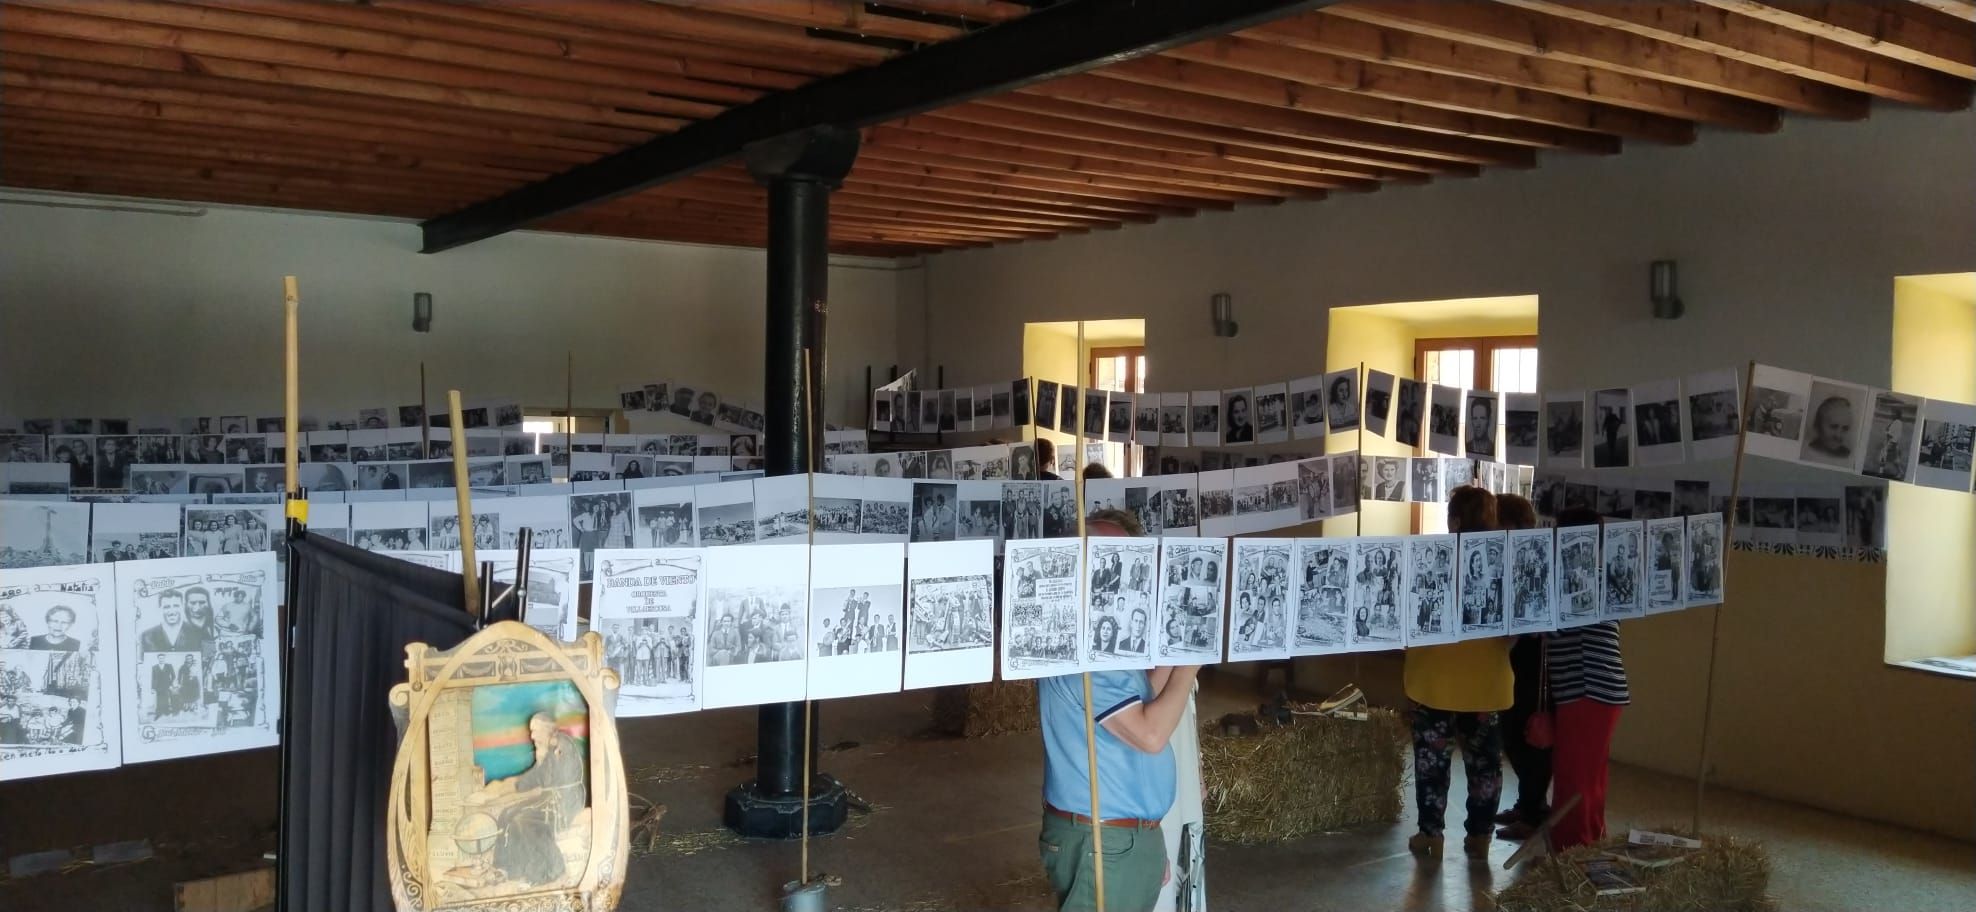 Exposición "Mirando al pasado" de Villaescusa